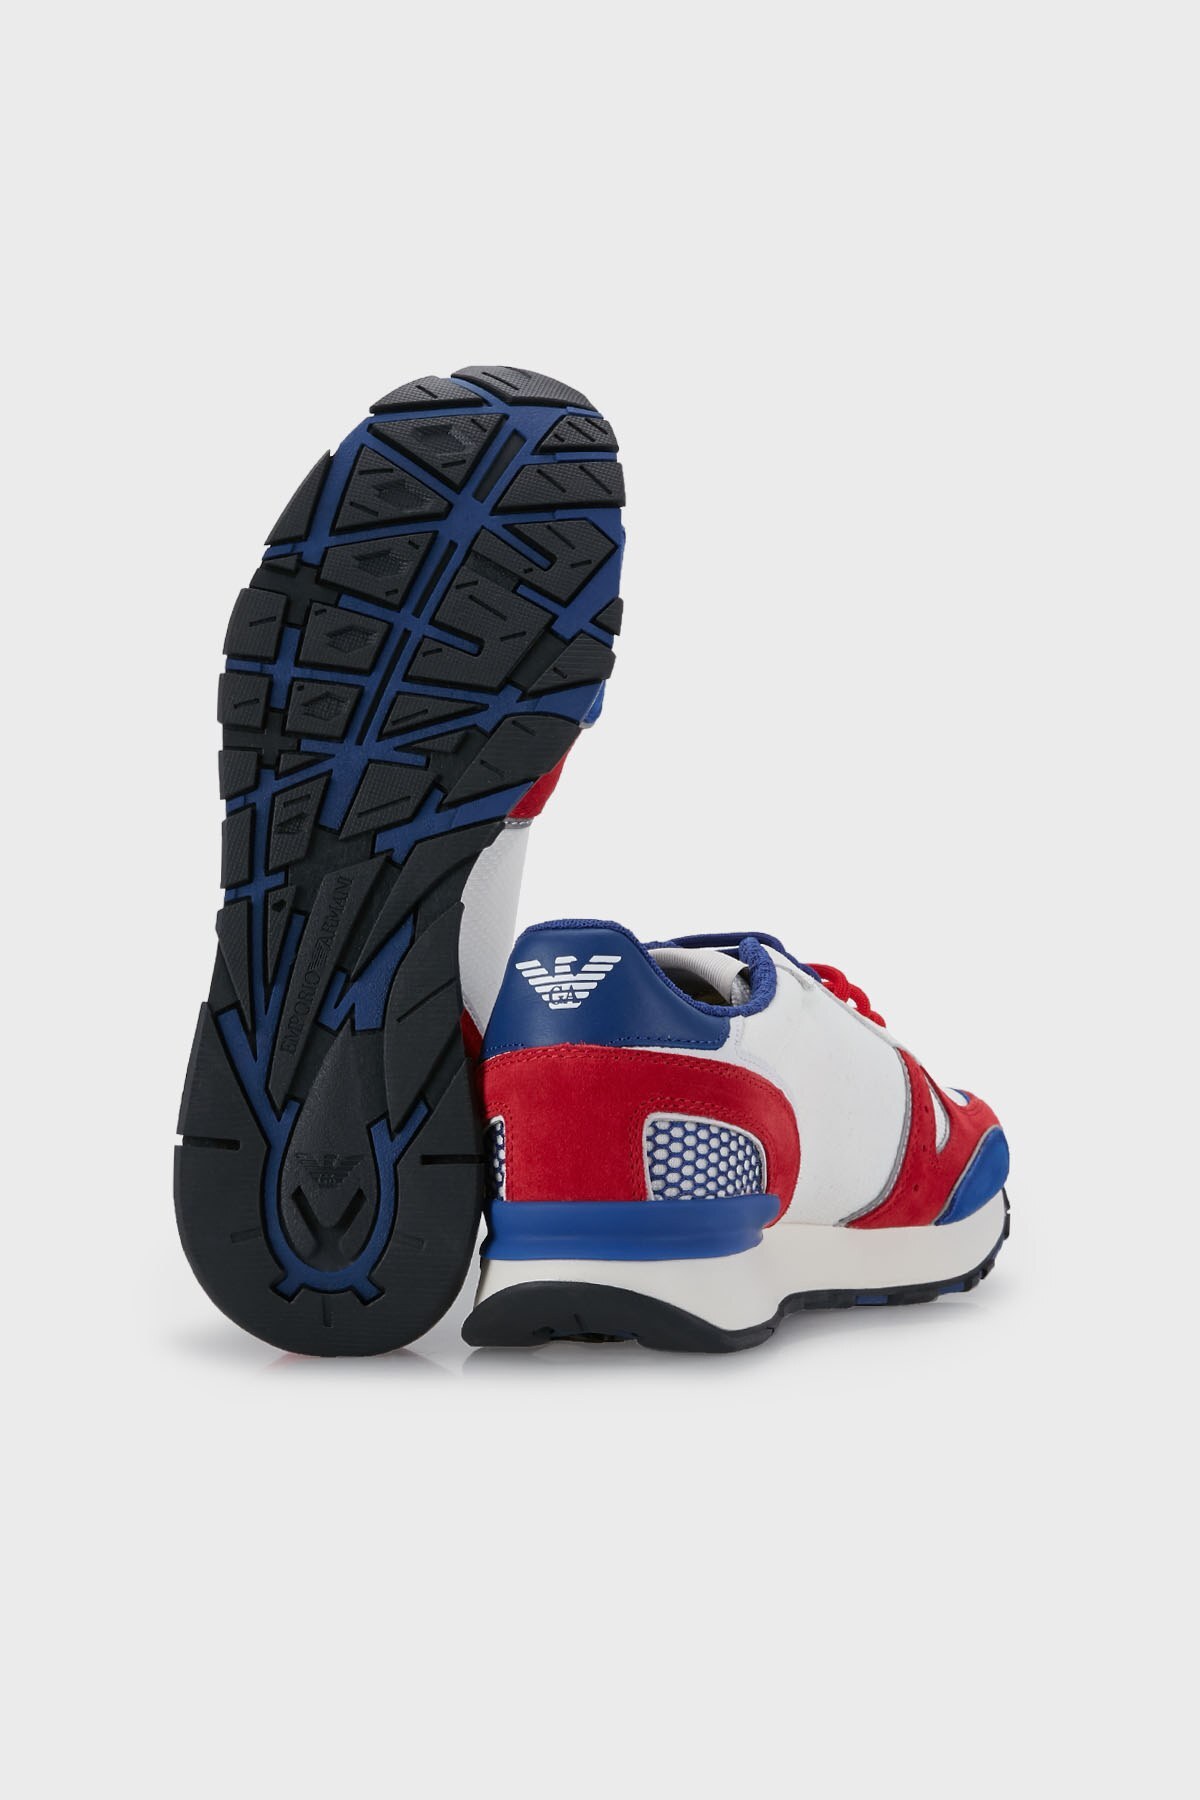 Emporio Armani Logolu Hakiki Deri Sneaker Erkek Ayakkabı X4X289 XM499 Q098 KIRMIZI-MAVİ